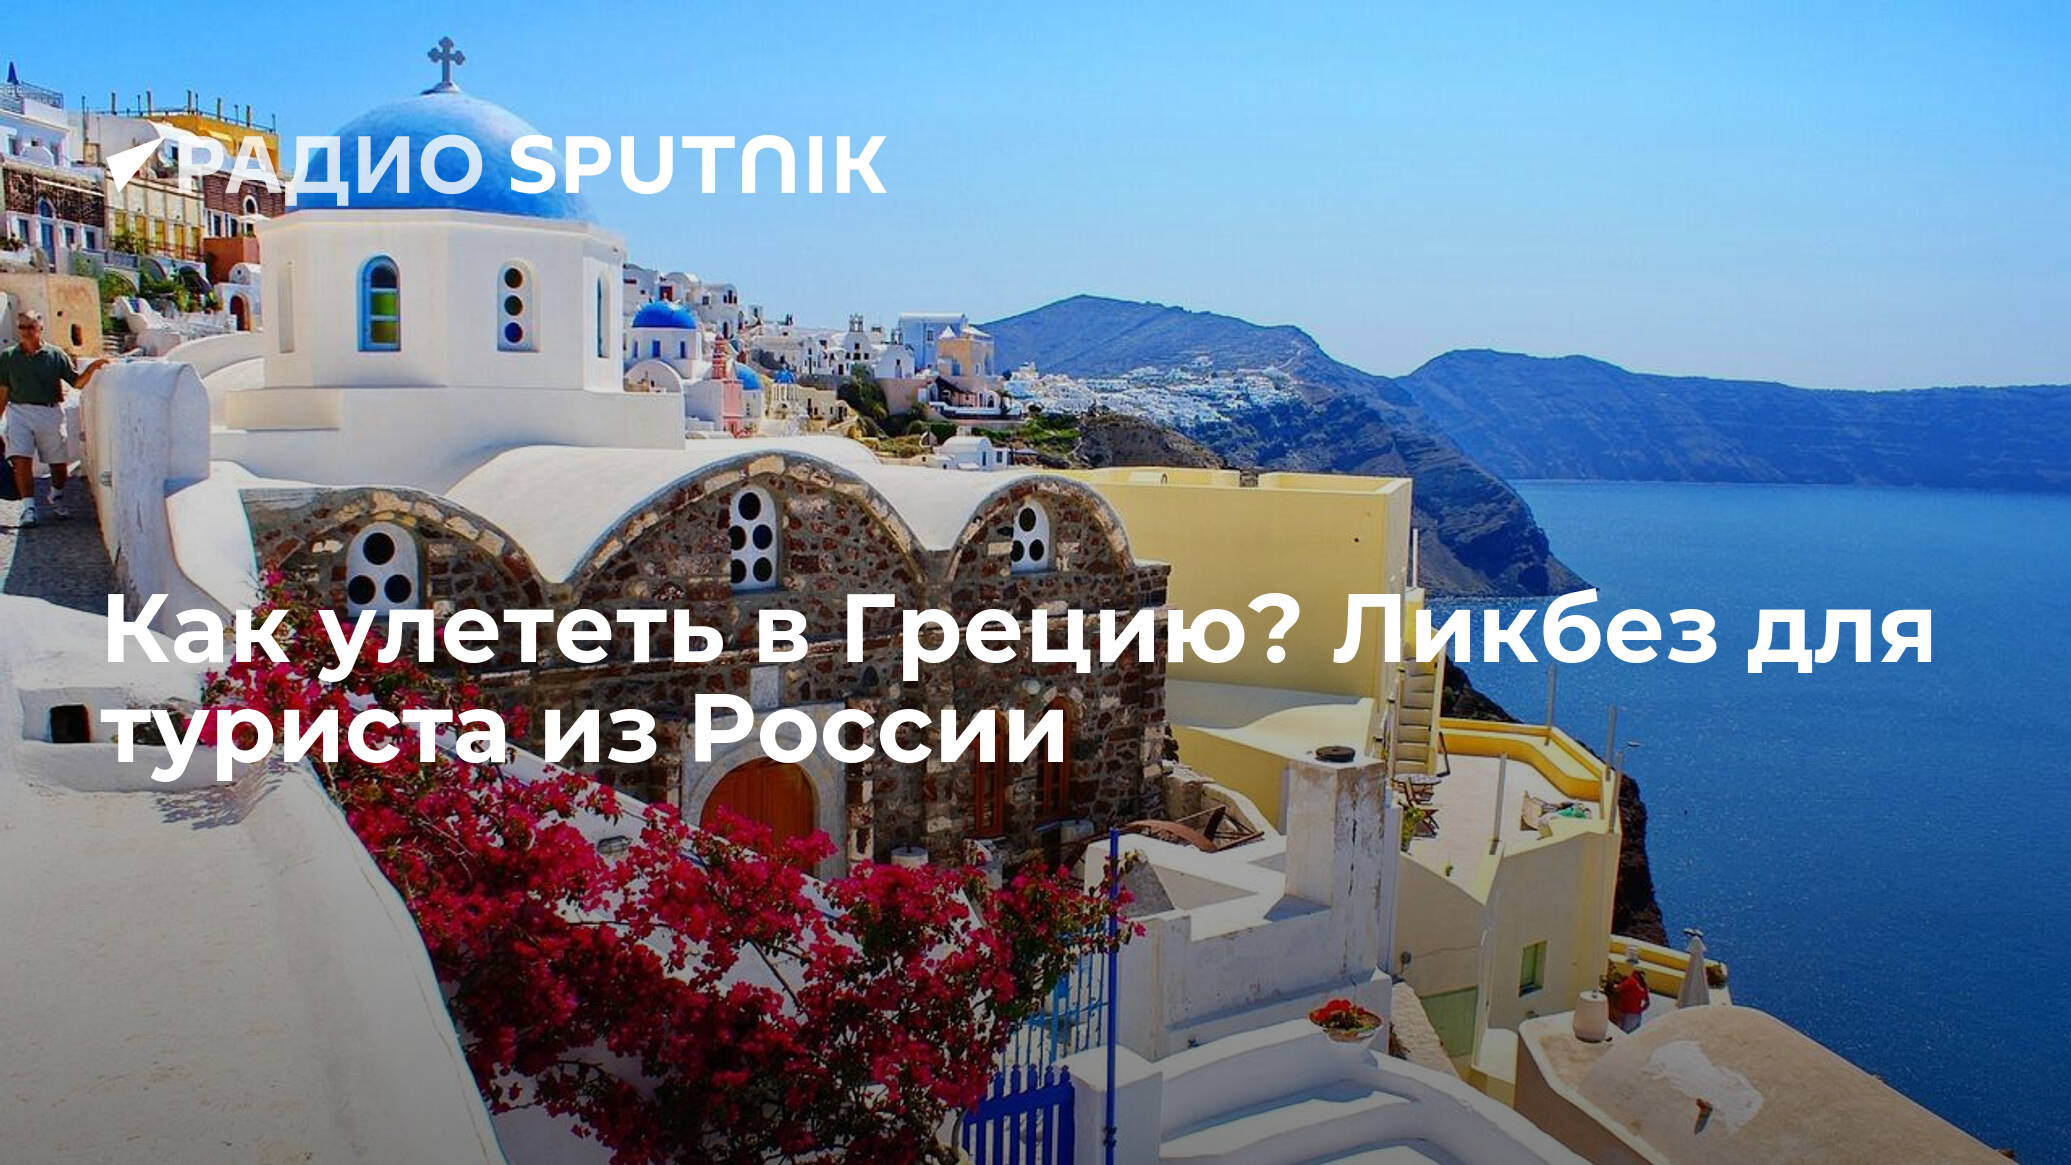 Жизнь в греции: стоимость продуктов и недвижимости, пенсионное обеспечение и налоги в 2021 году